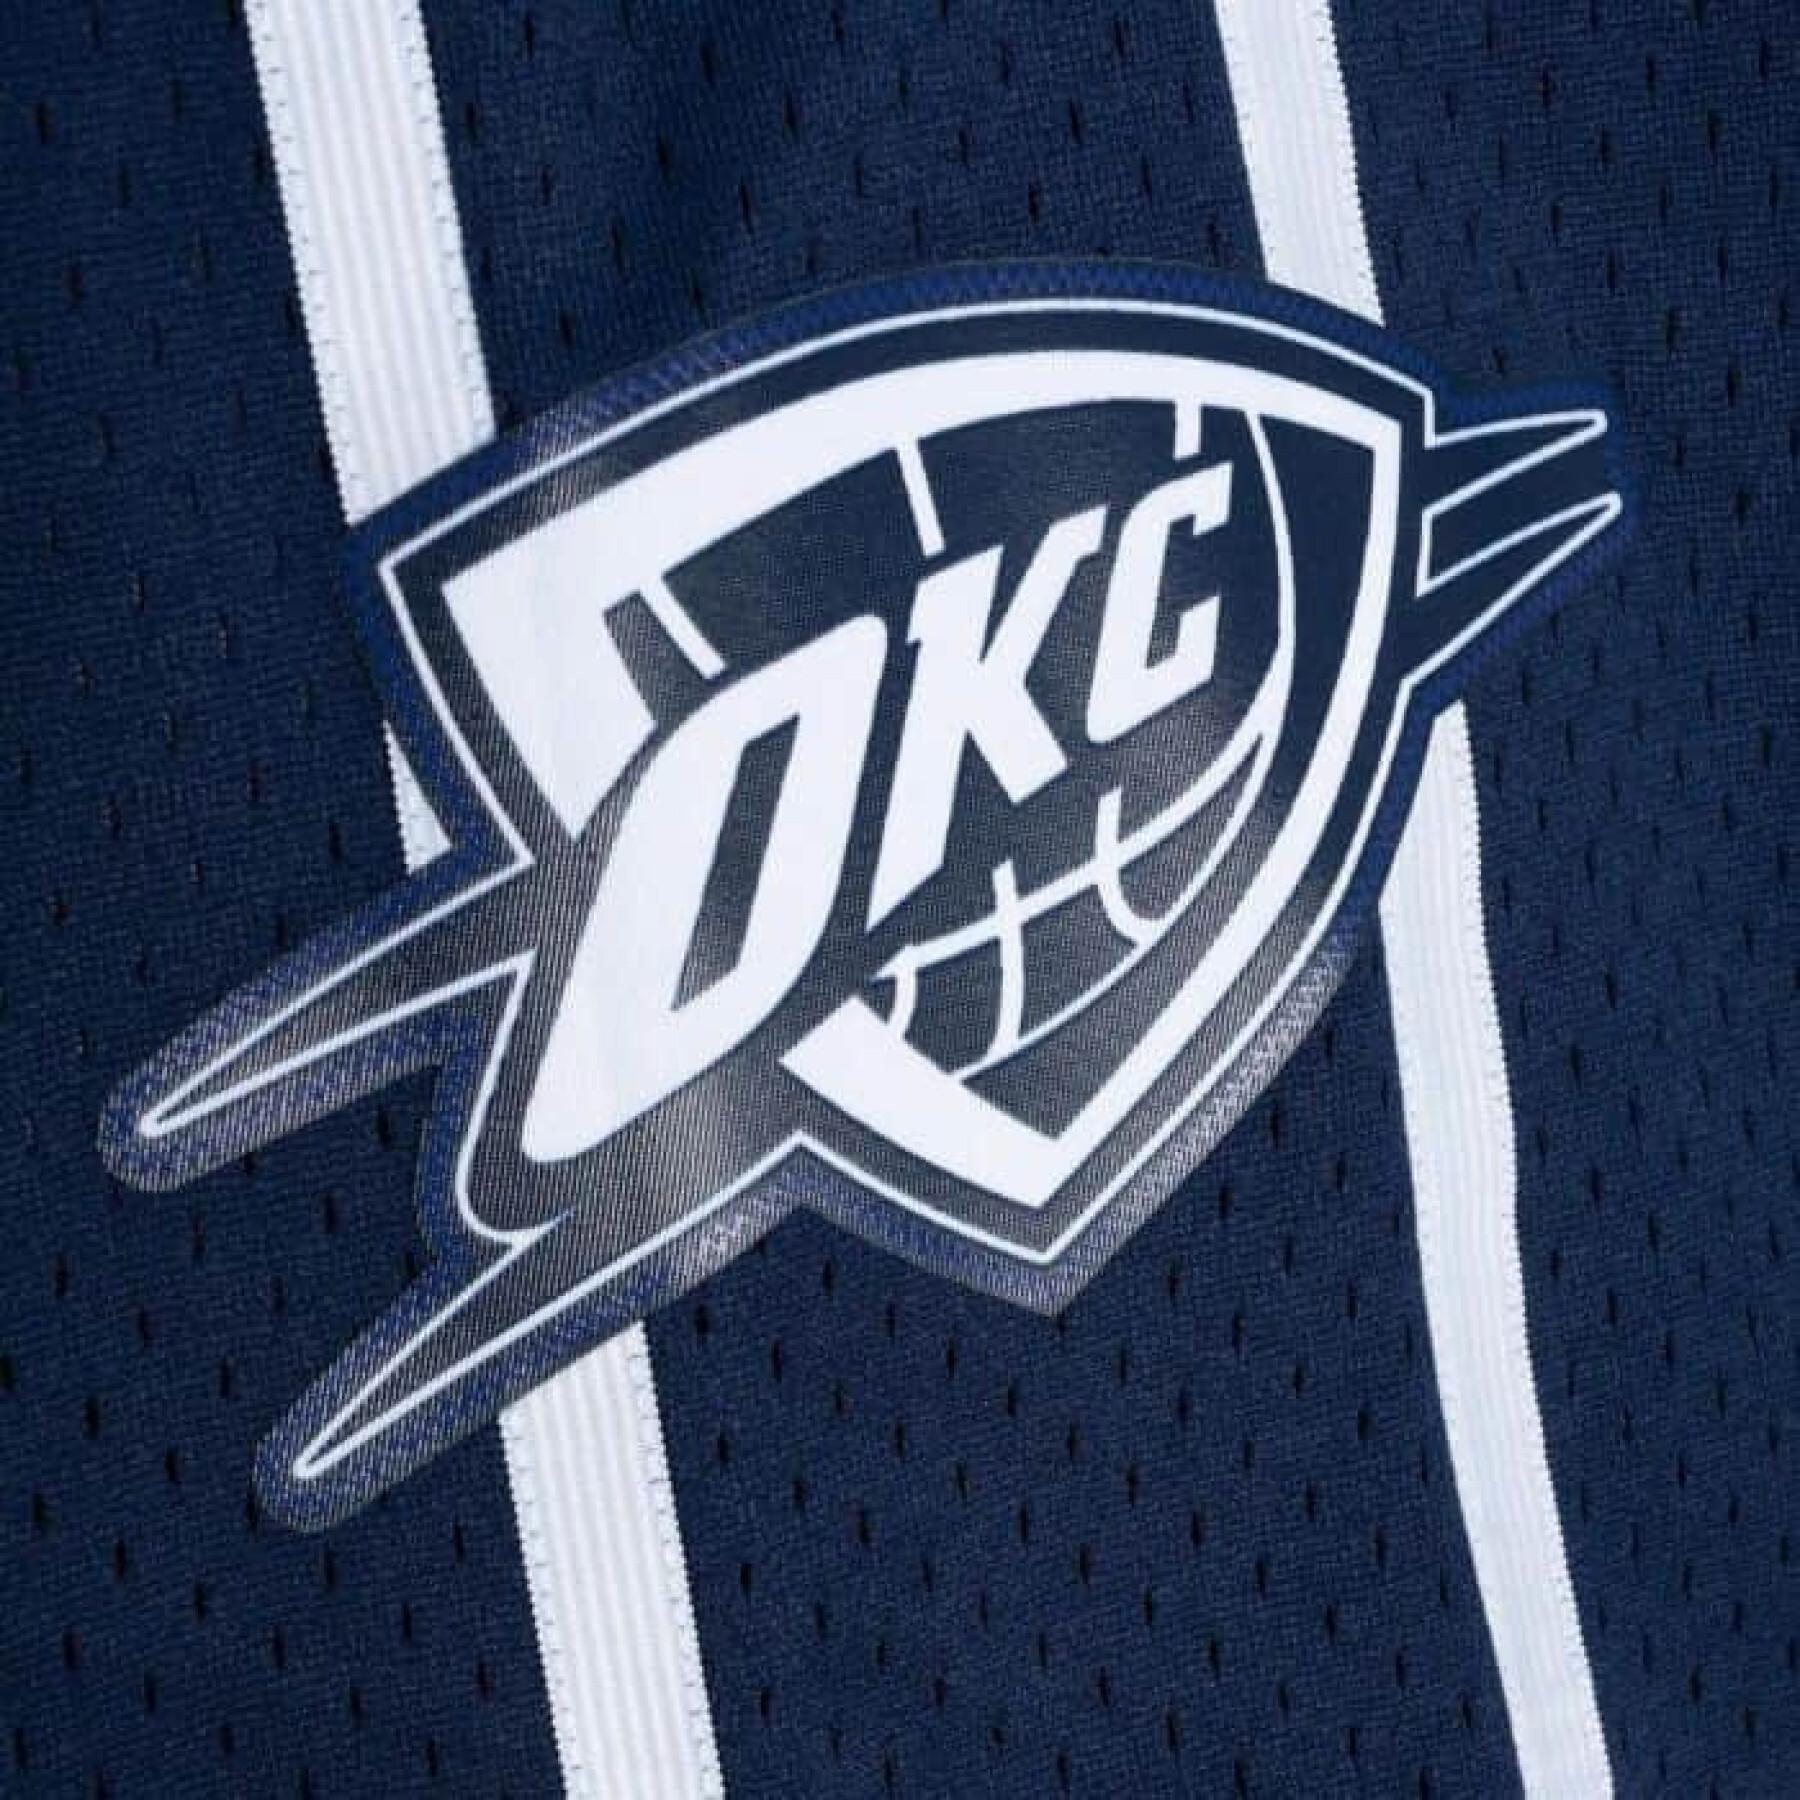 Kort Oklahoma City Thunder 2015-16